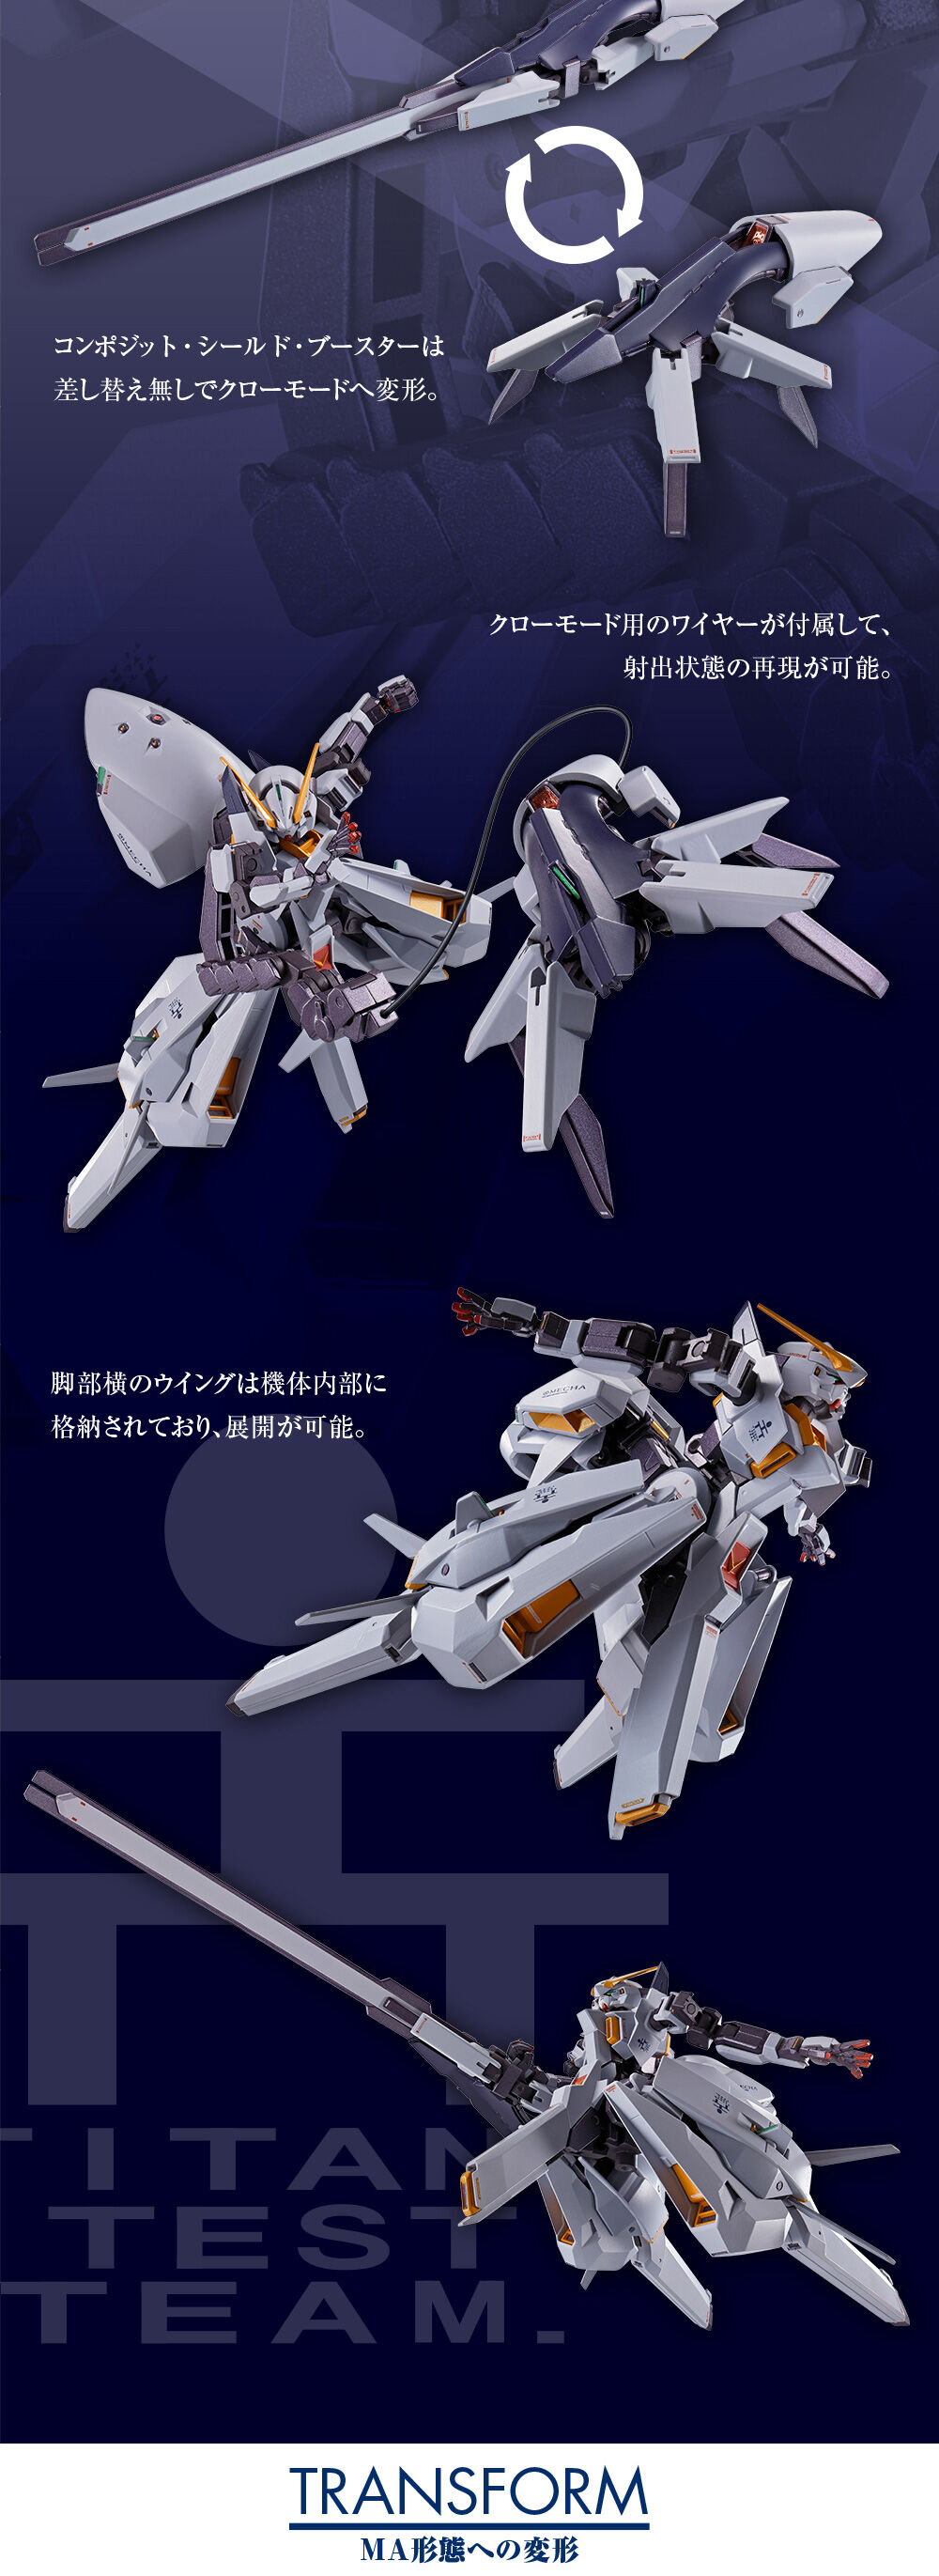 Metal Robot Spirits(Side MS) RX-124 Gundam TR-6[Wondwart]